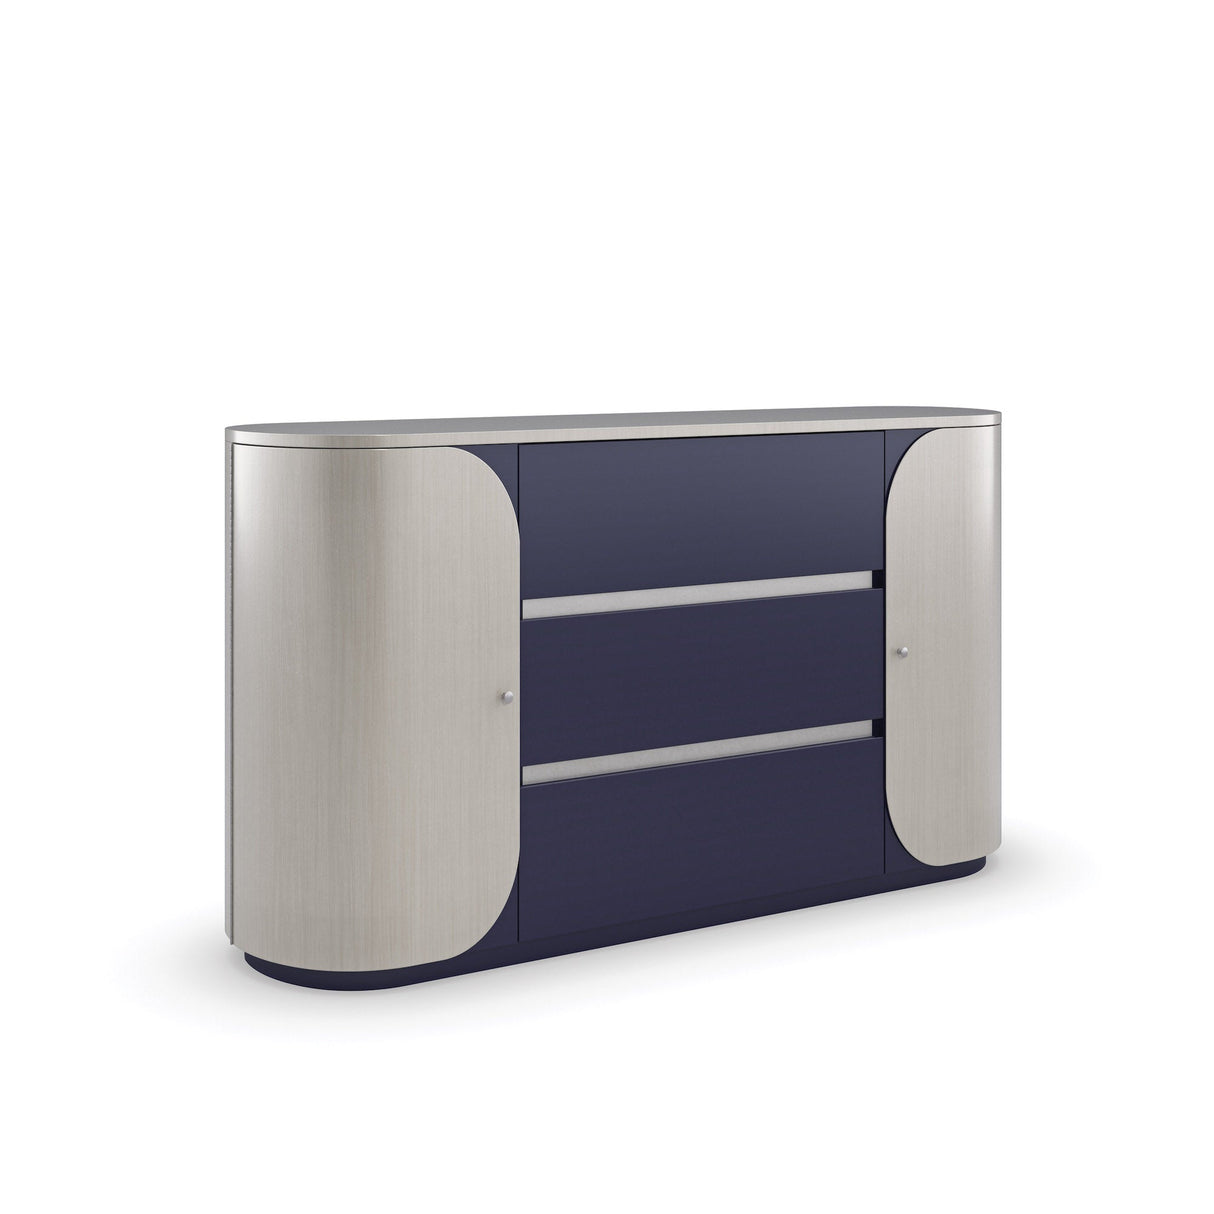 Caracole Da Vita Duo Dresser Furniture caracole-M133-421-022